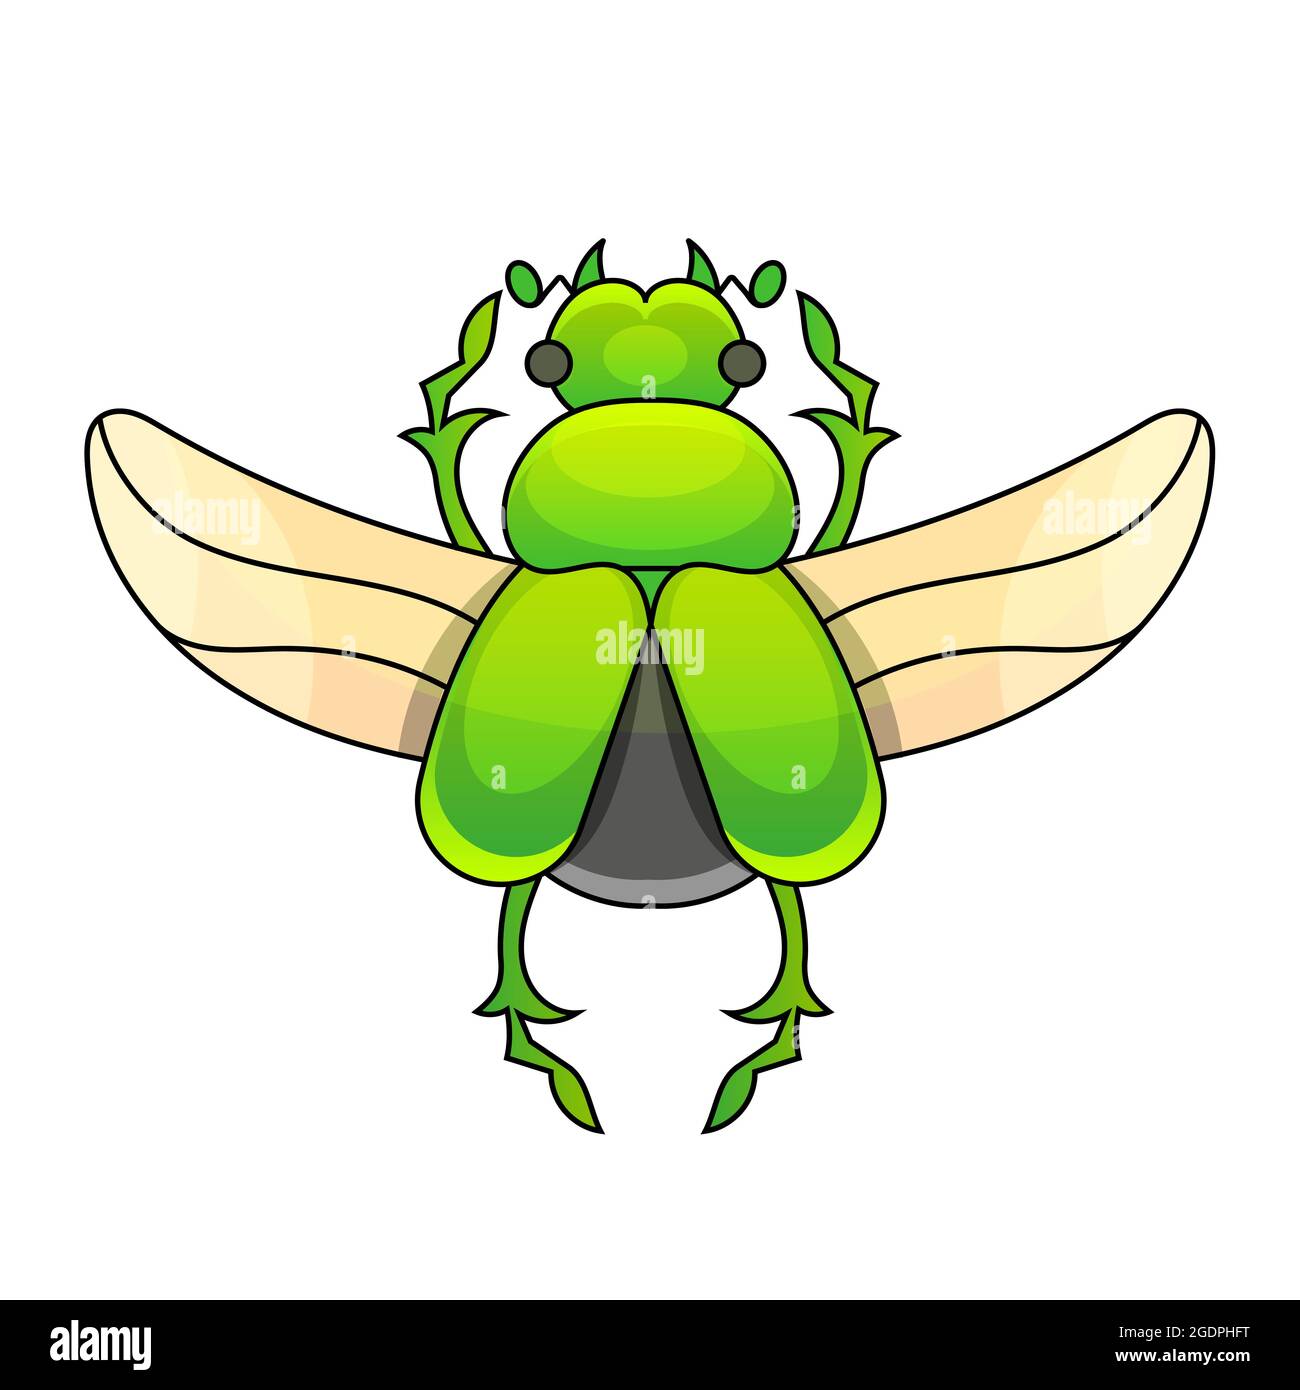 Incisione disegnata a mano schizzo di scarabeo, maggio bug. Illustrazione vettoriale per tatuaggio e spilla decorativa fatta a mano. Illustrazione Vettoriale